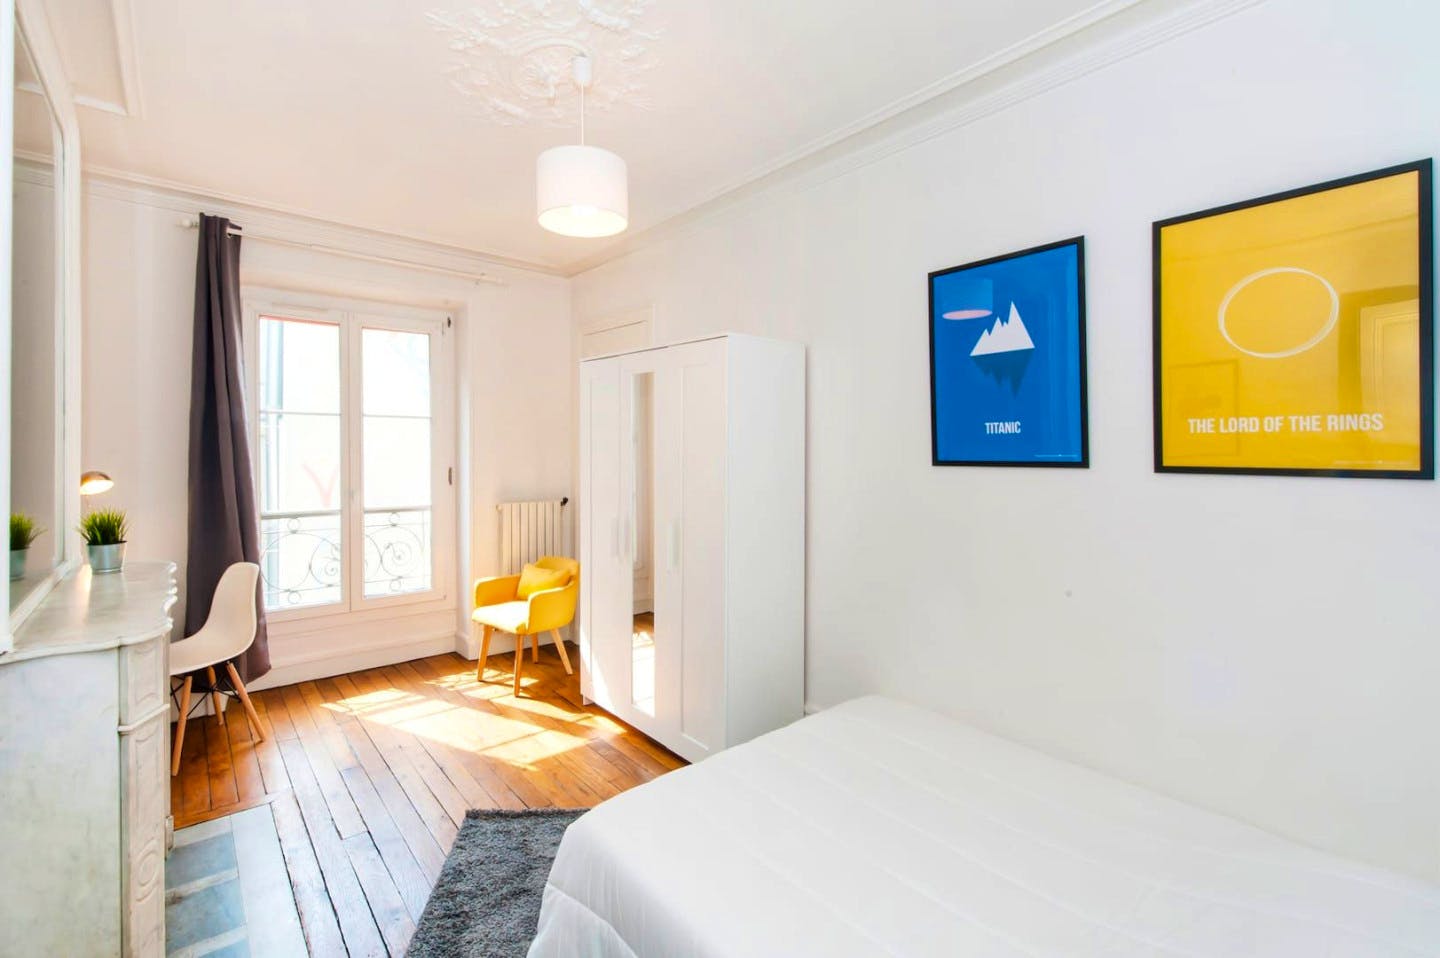 4-Bed Apartment on Rue de l'Aqueduc